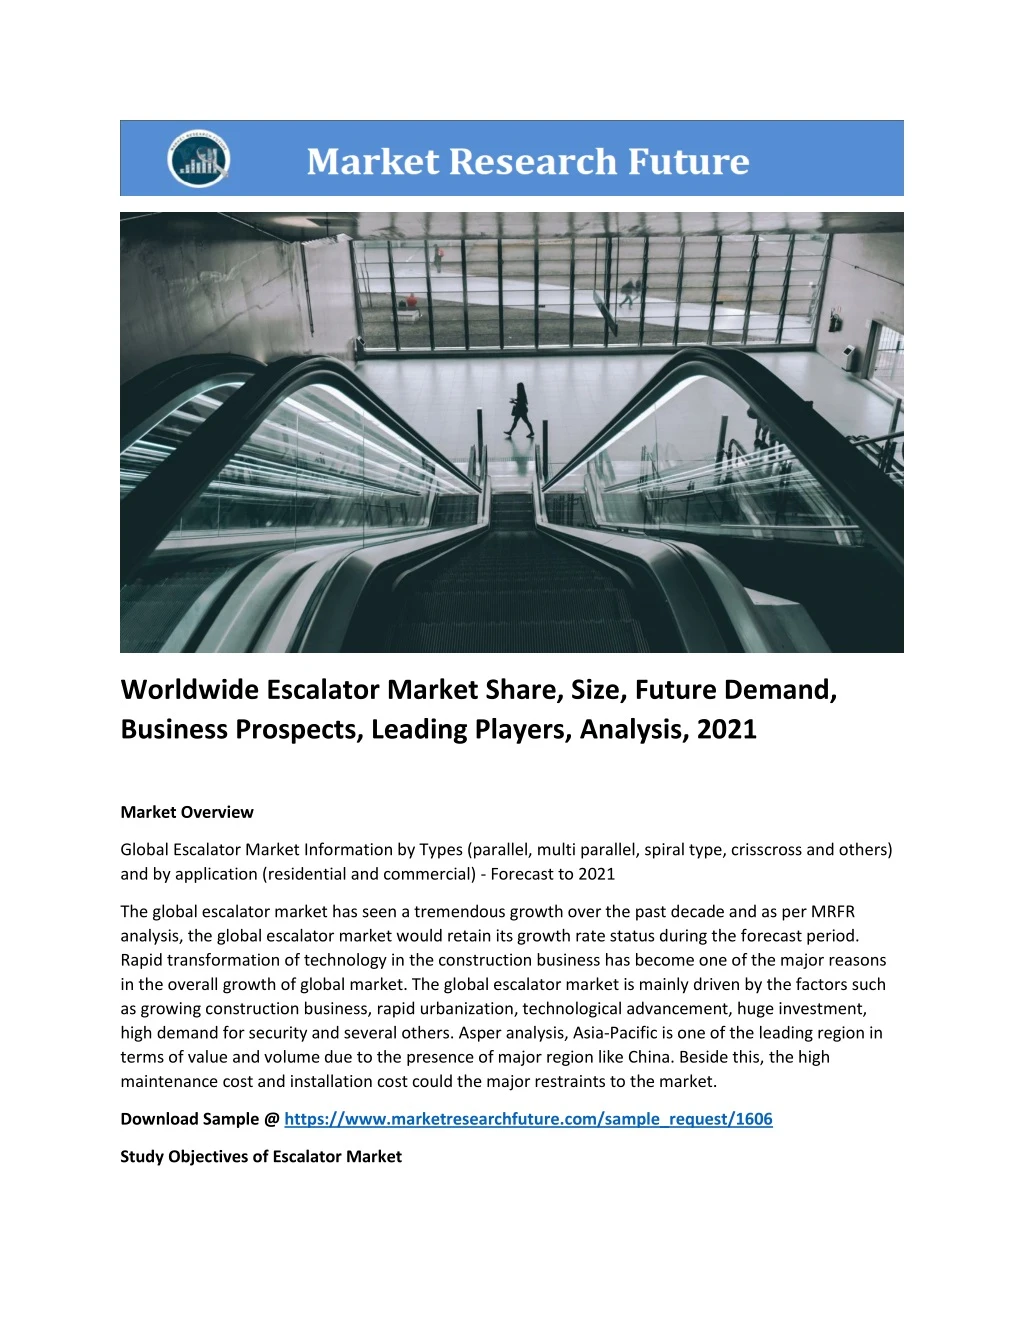 worldwide escalator market share size future